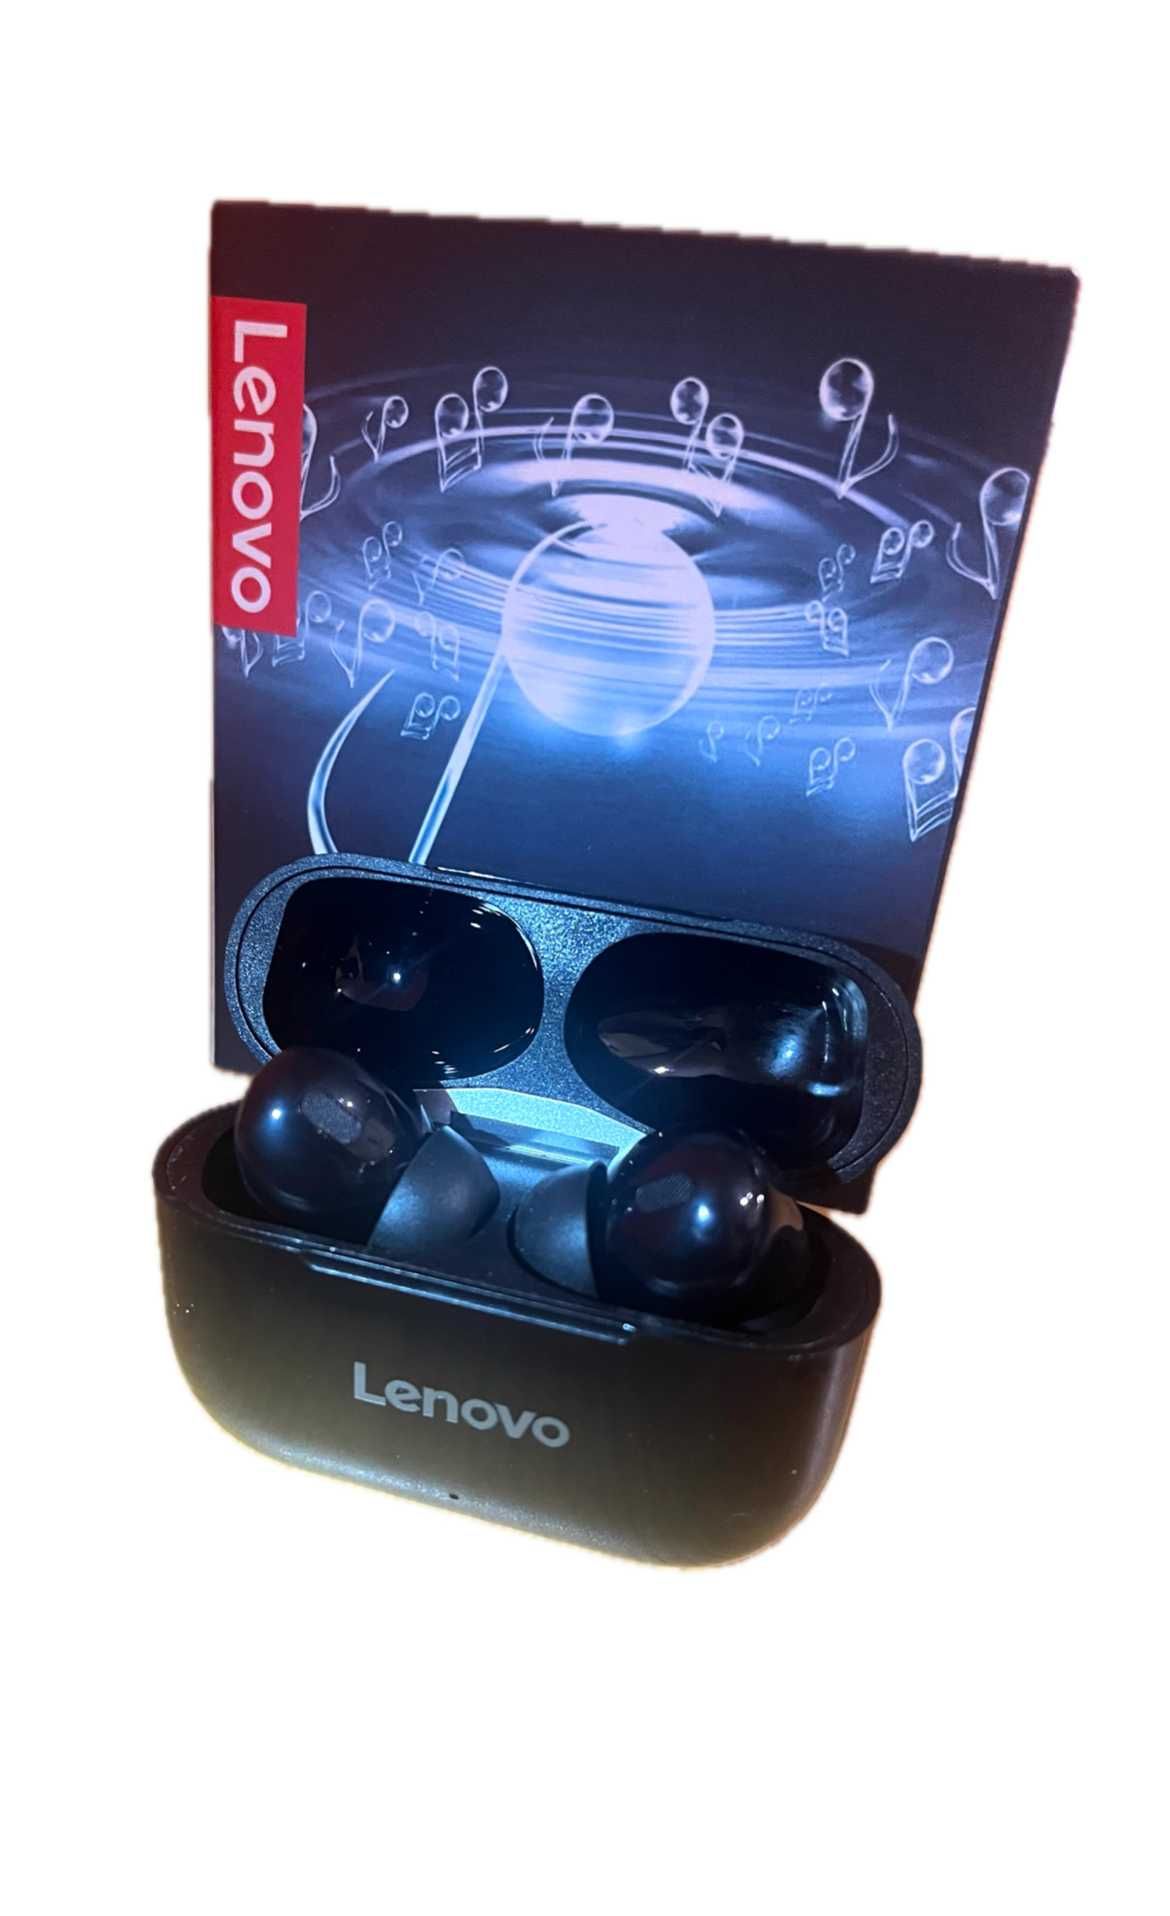 Nowe słuchawki bezprzewodowe Lenovo! Czarne / Białe